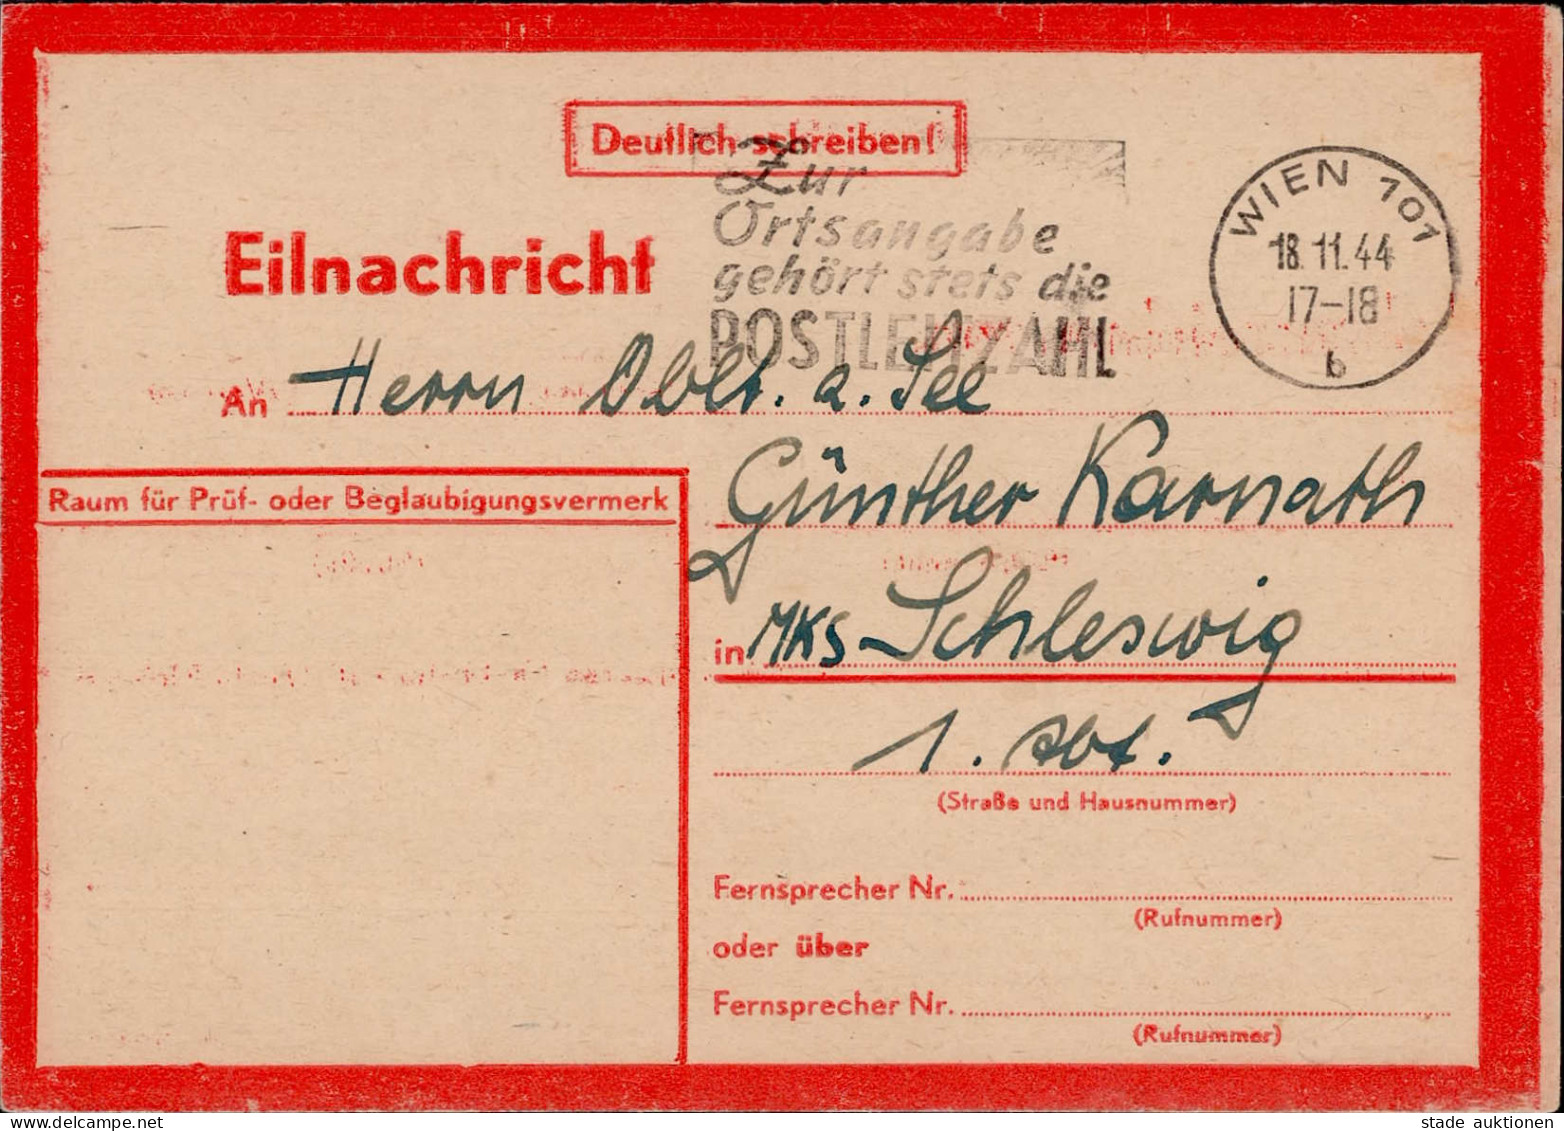 Feldpost WK II Eilnachrichten-Karte Lebenszeichen Rot Wien 18.11.1944 An Einen Oberleutnant Zur See ...bombengeschädigt  - Guerre 1939-45